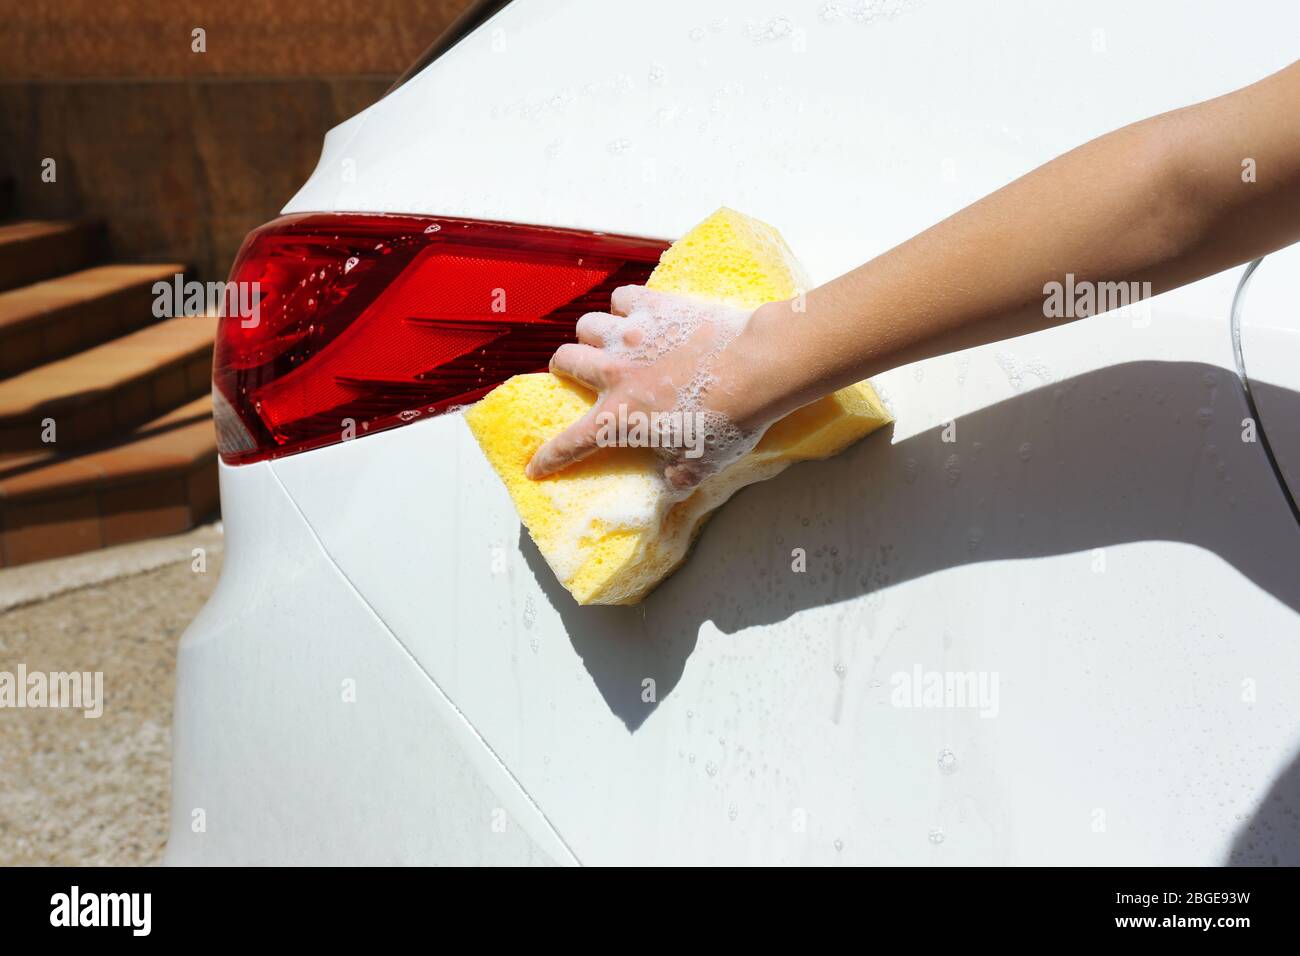 Lavage de voiture extérieur avec éponge jaune Banque D'Images